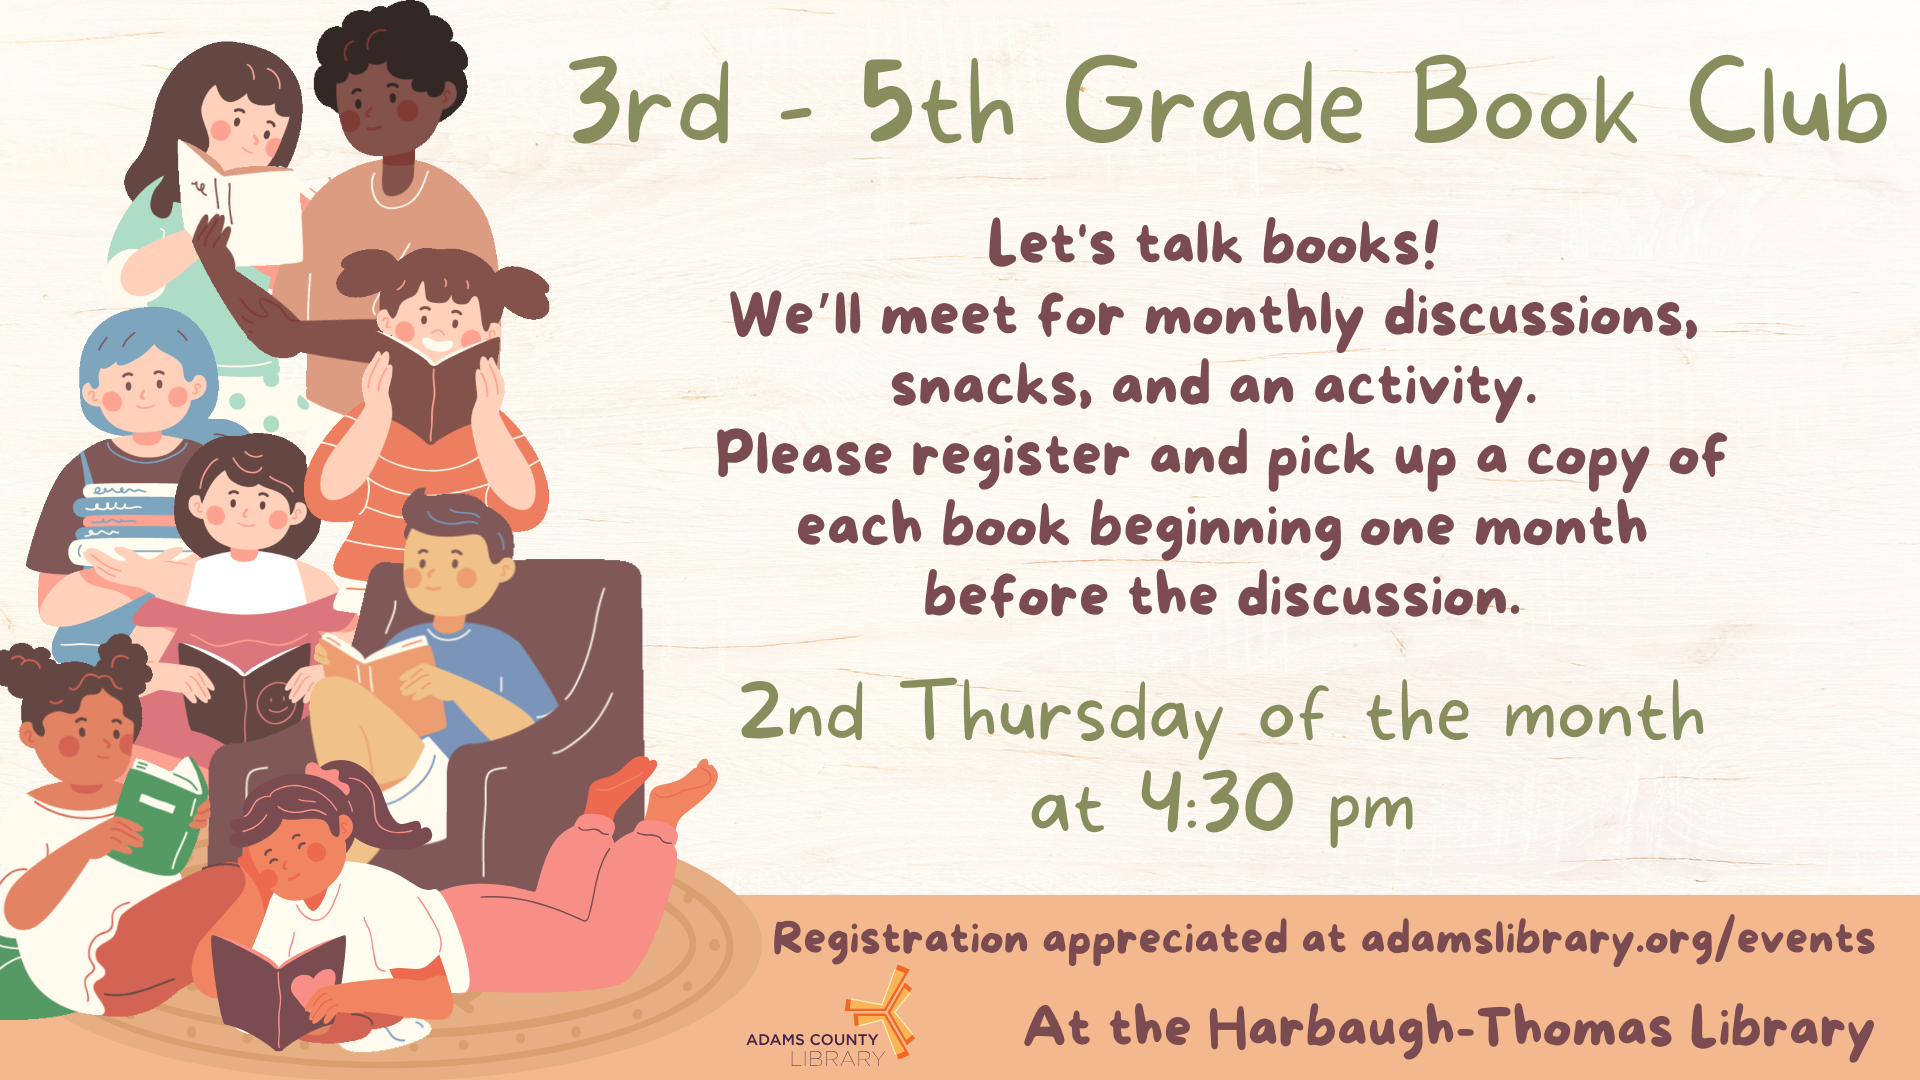 3rd - 5th Grade Book Club